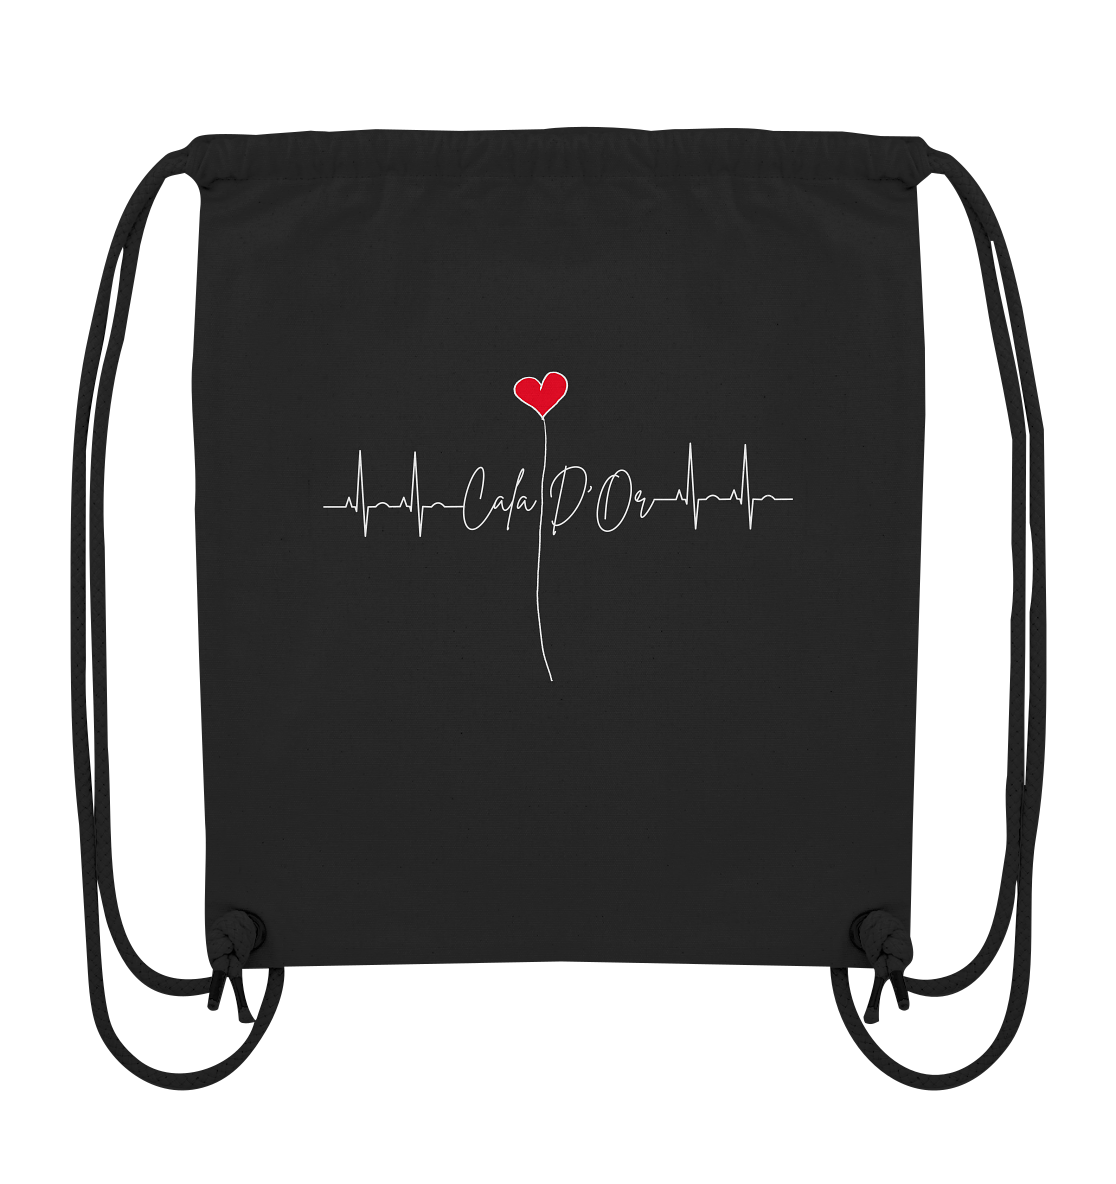 Schwarze Gym-Bag mit weißer Aufschrift Cala D'Or und einem Herz